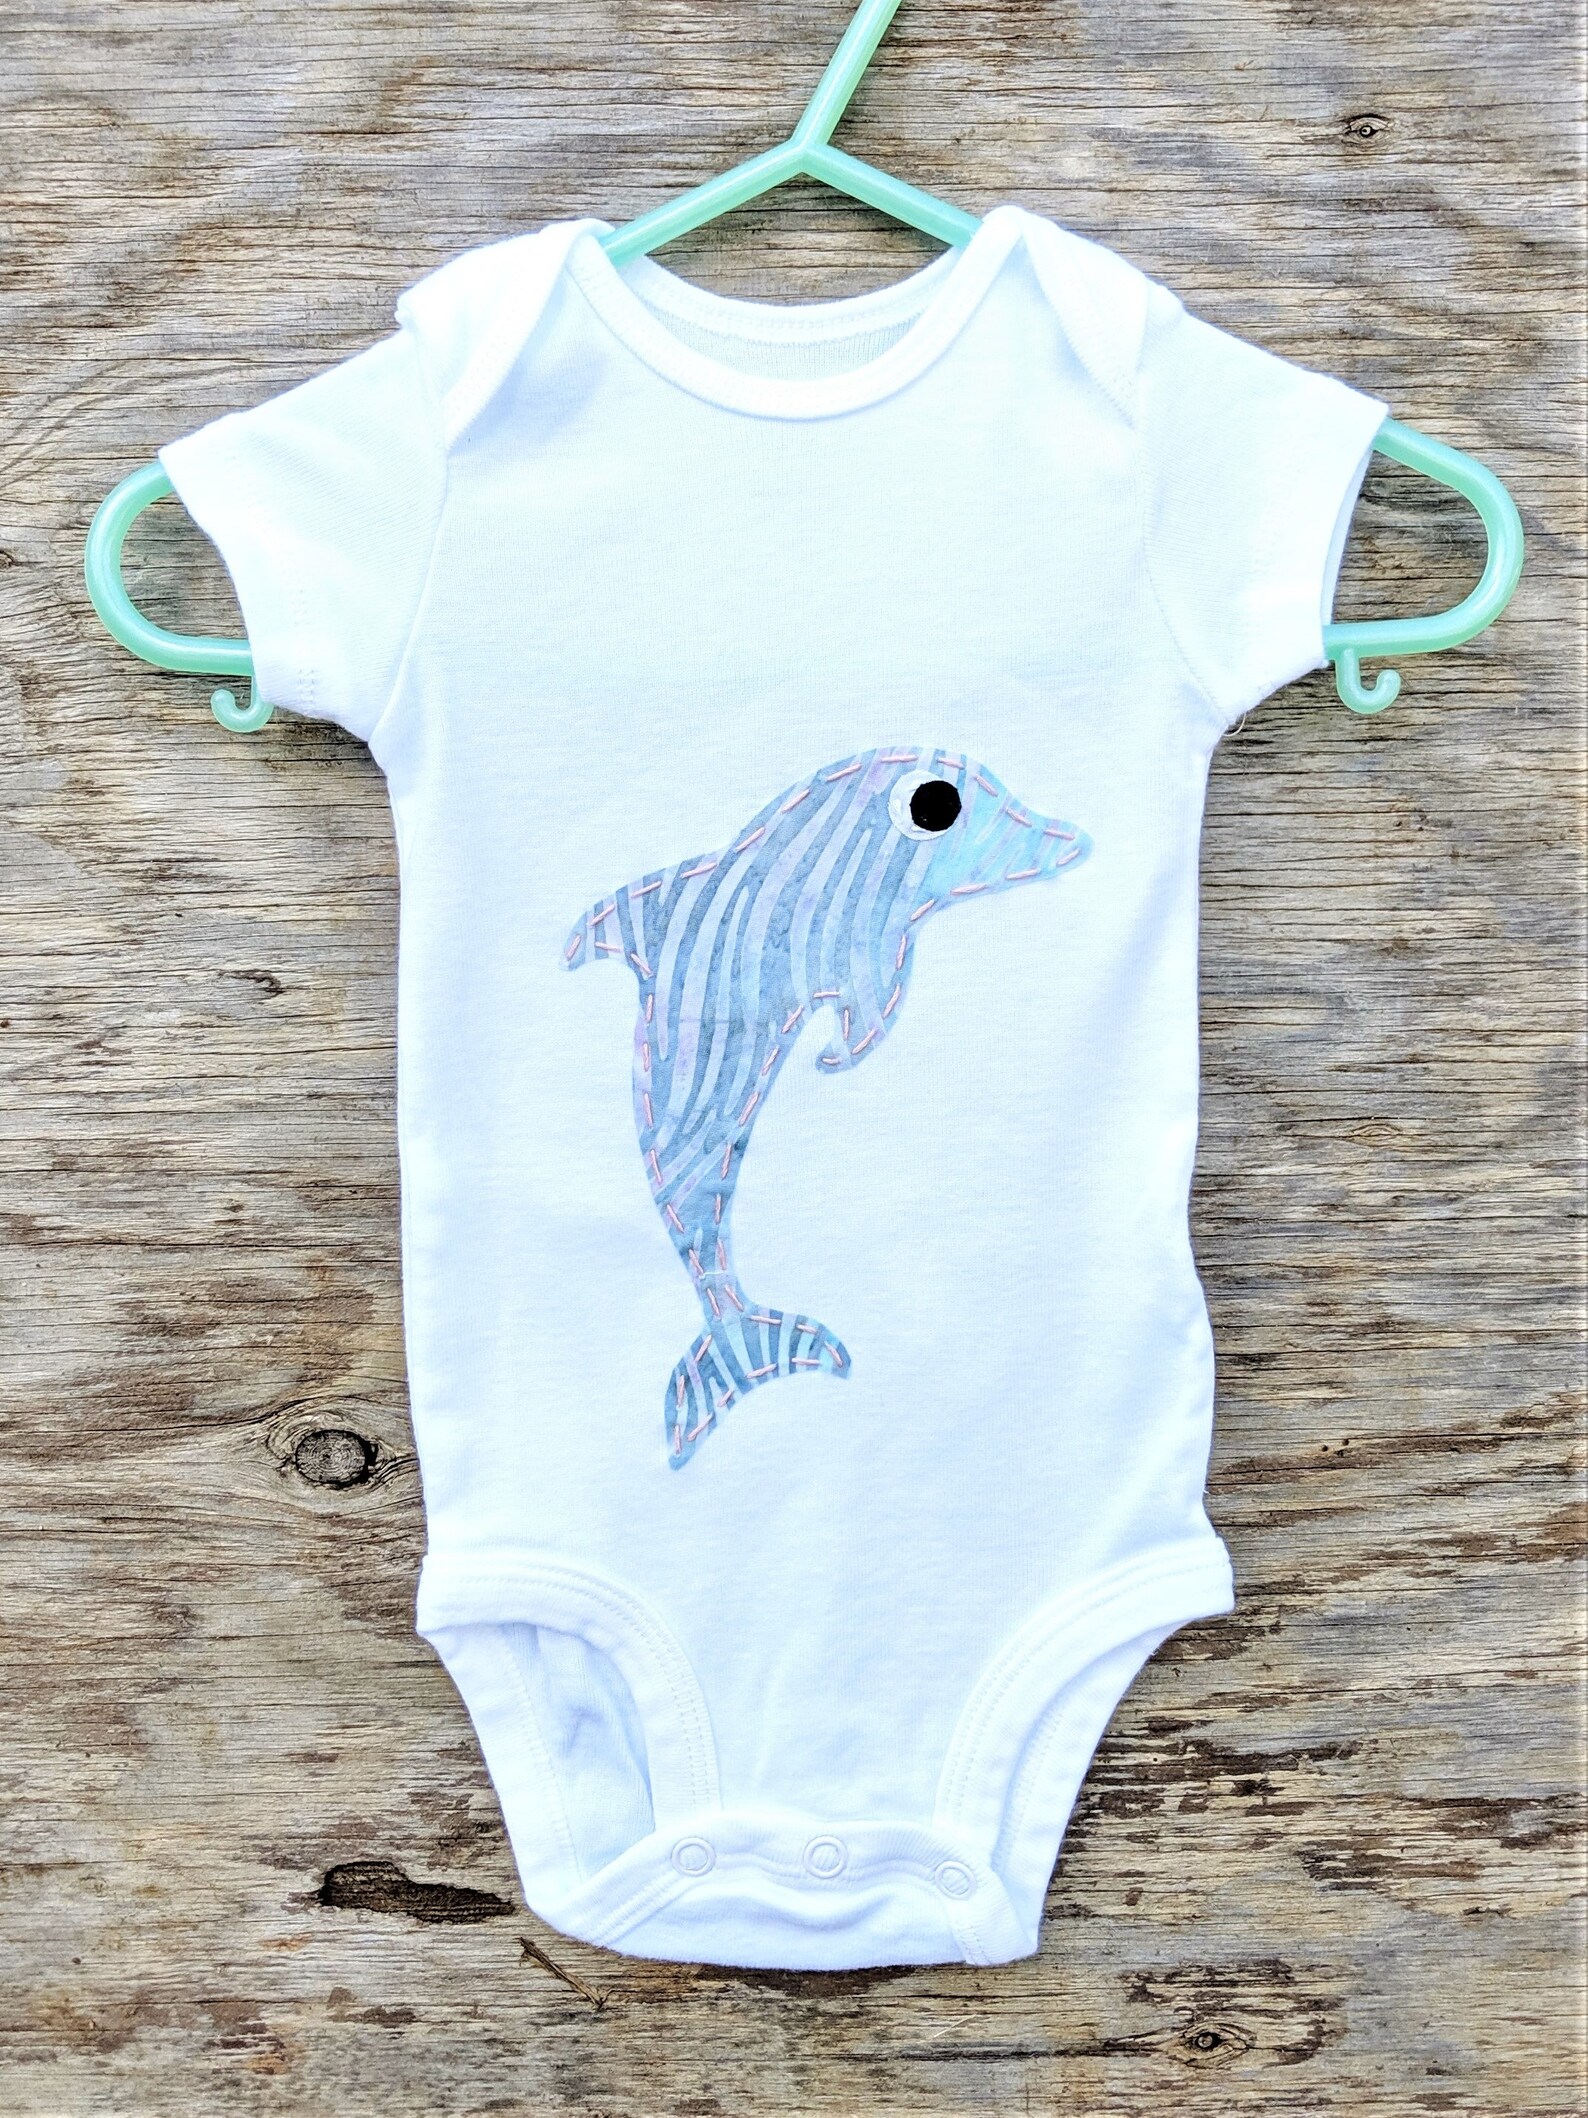 Dolphin Onesie Bodysuit Baby Boy Girl - Etsy